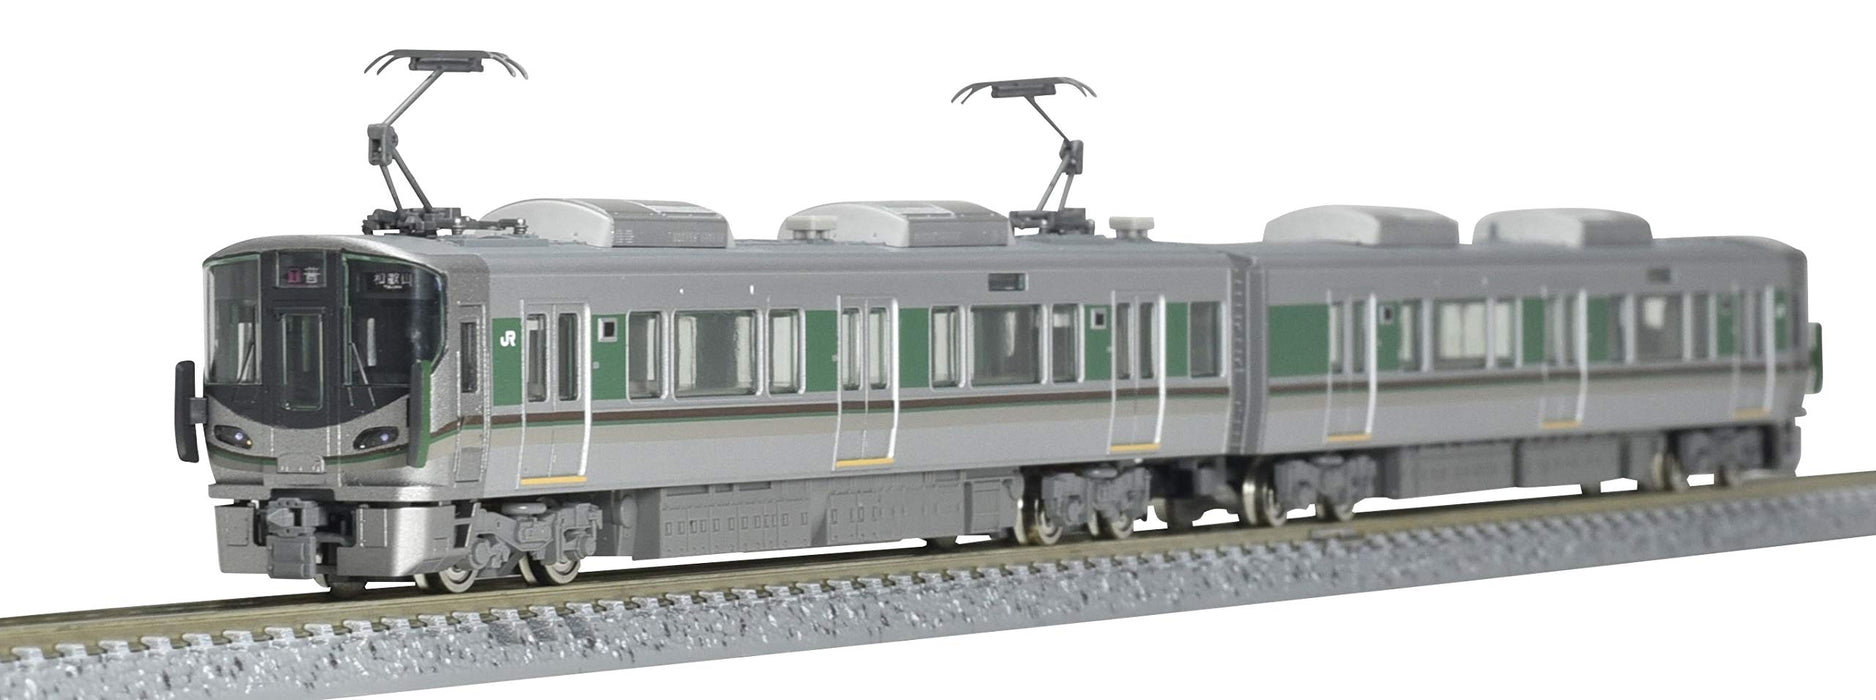 Tomytec Tomix N Gauge 227 1000 Wakayama Sakurai Line 2 Car Model Train Set B